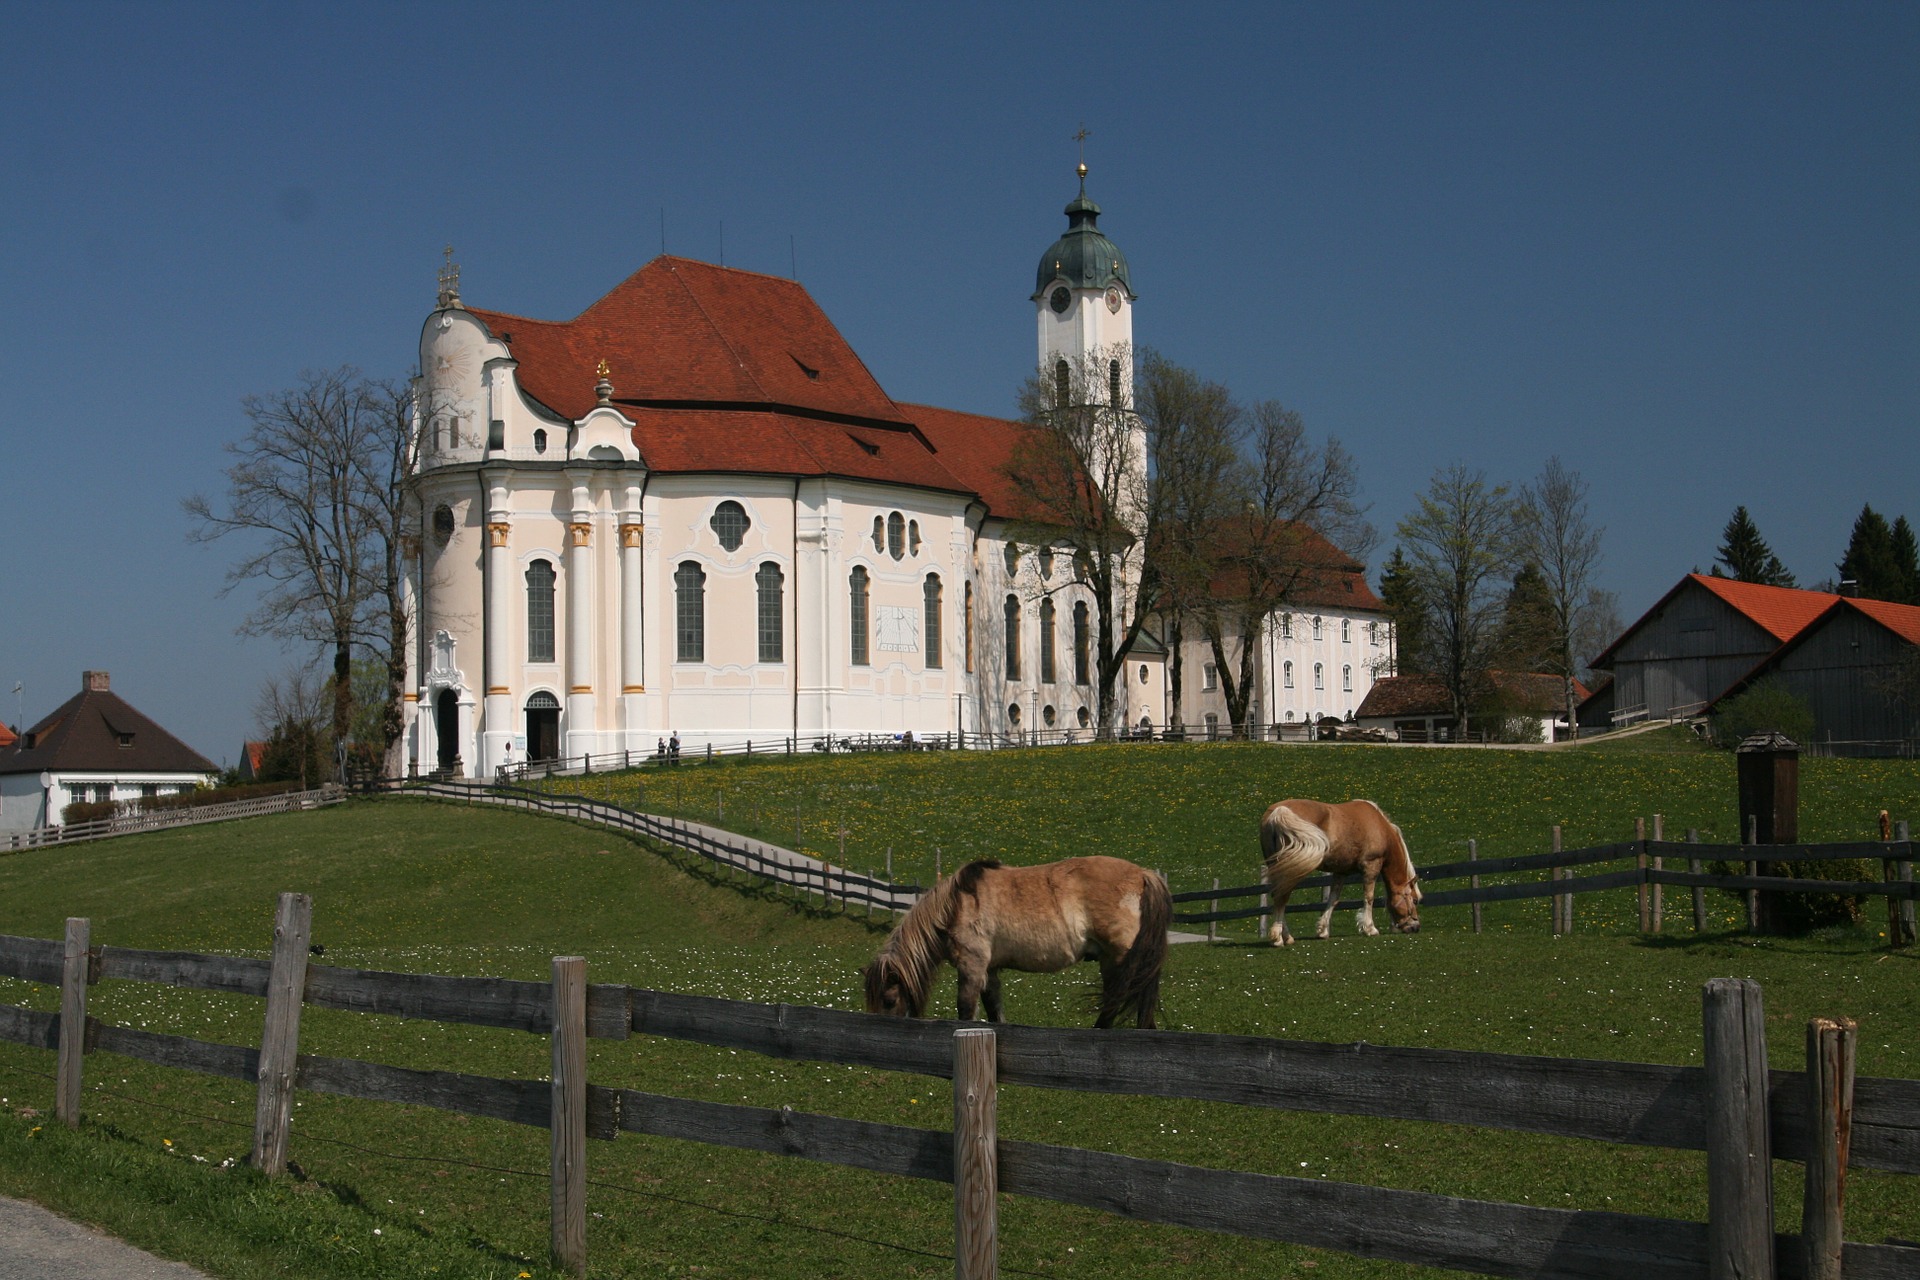 Busreise Bayern Wieskirche weiße Kirche auf grünem Hügel und Pferde